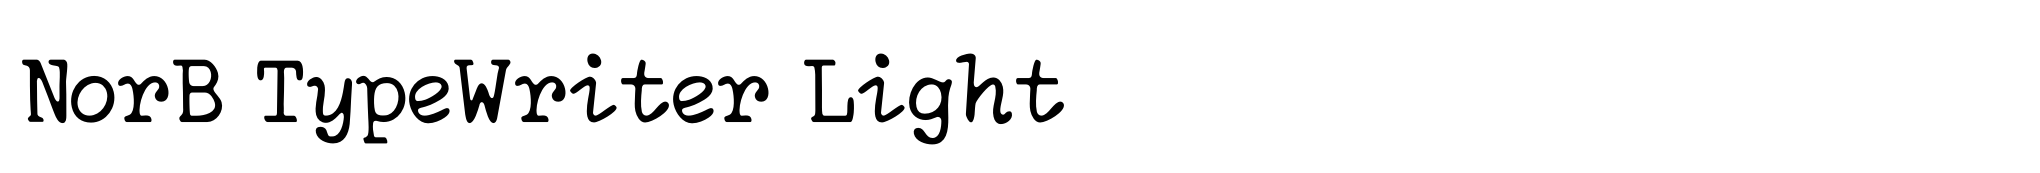 NorB TypeWriter Light image